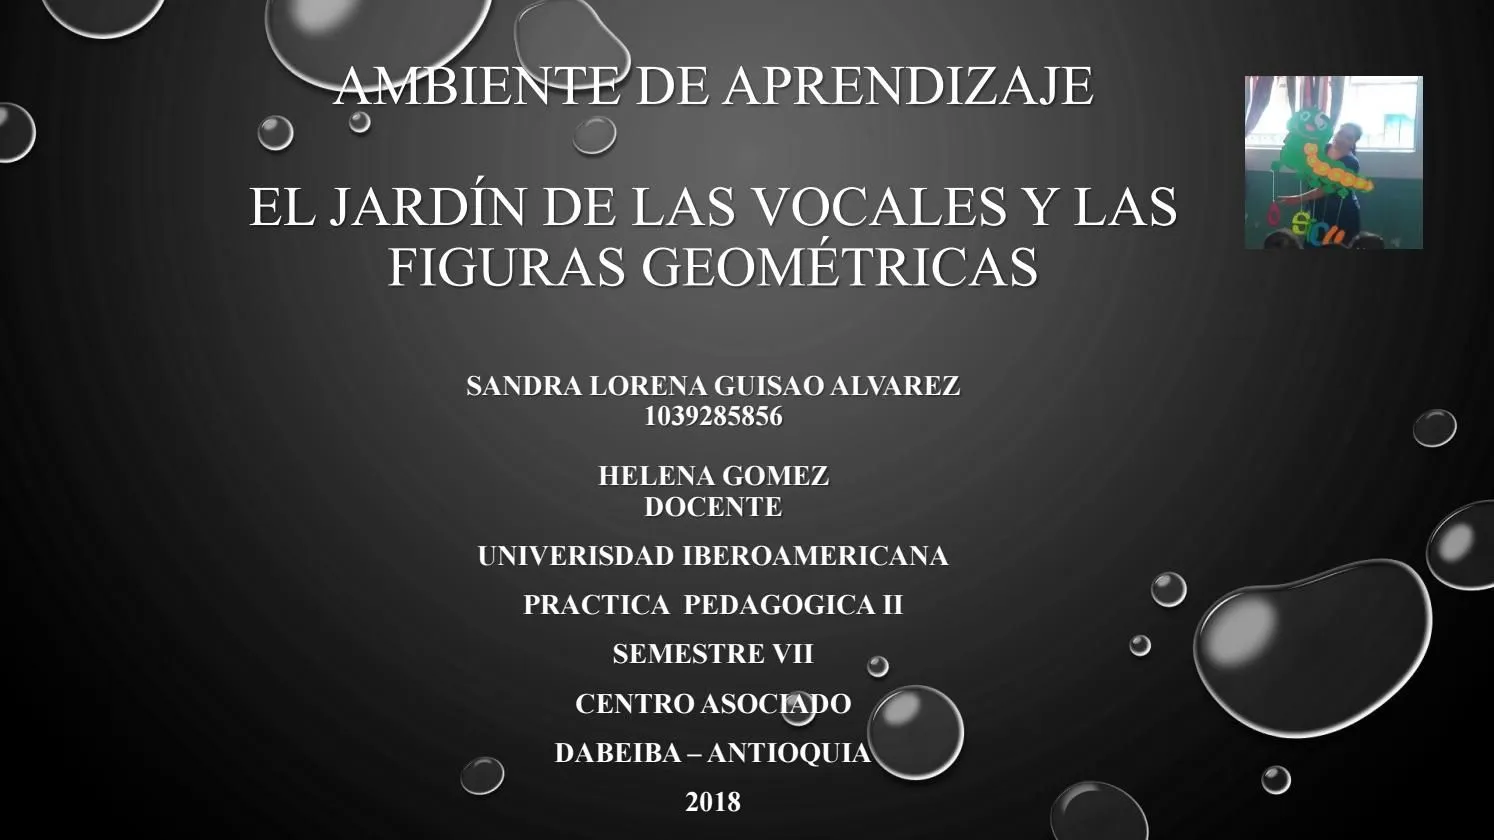 EL JARDÍN DE LAS VOCALES Y FIGURAS GEOMETRICAS by sandra04guisao - Issuu